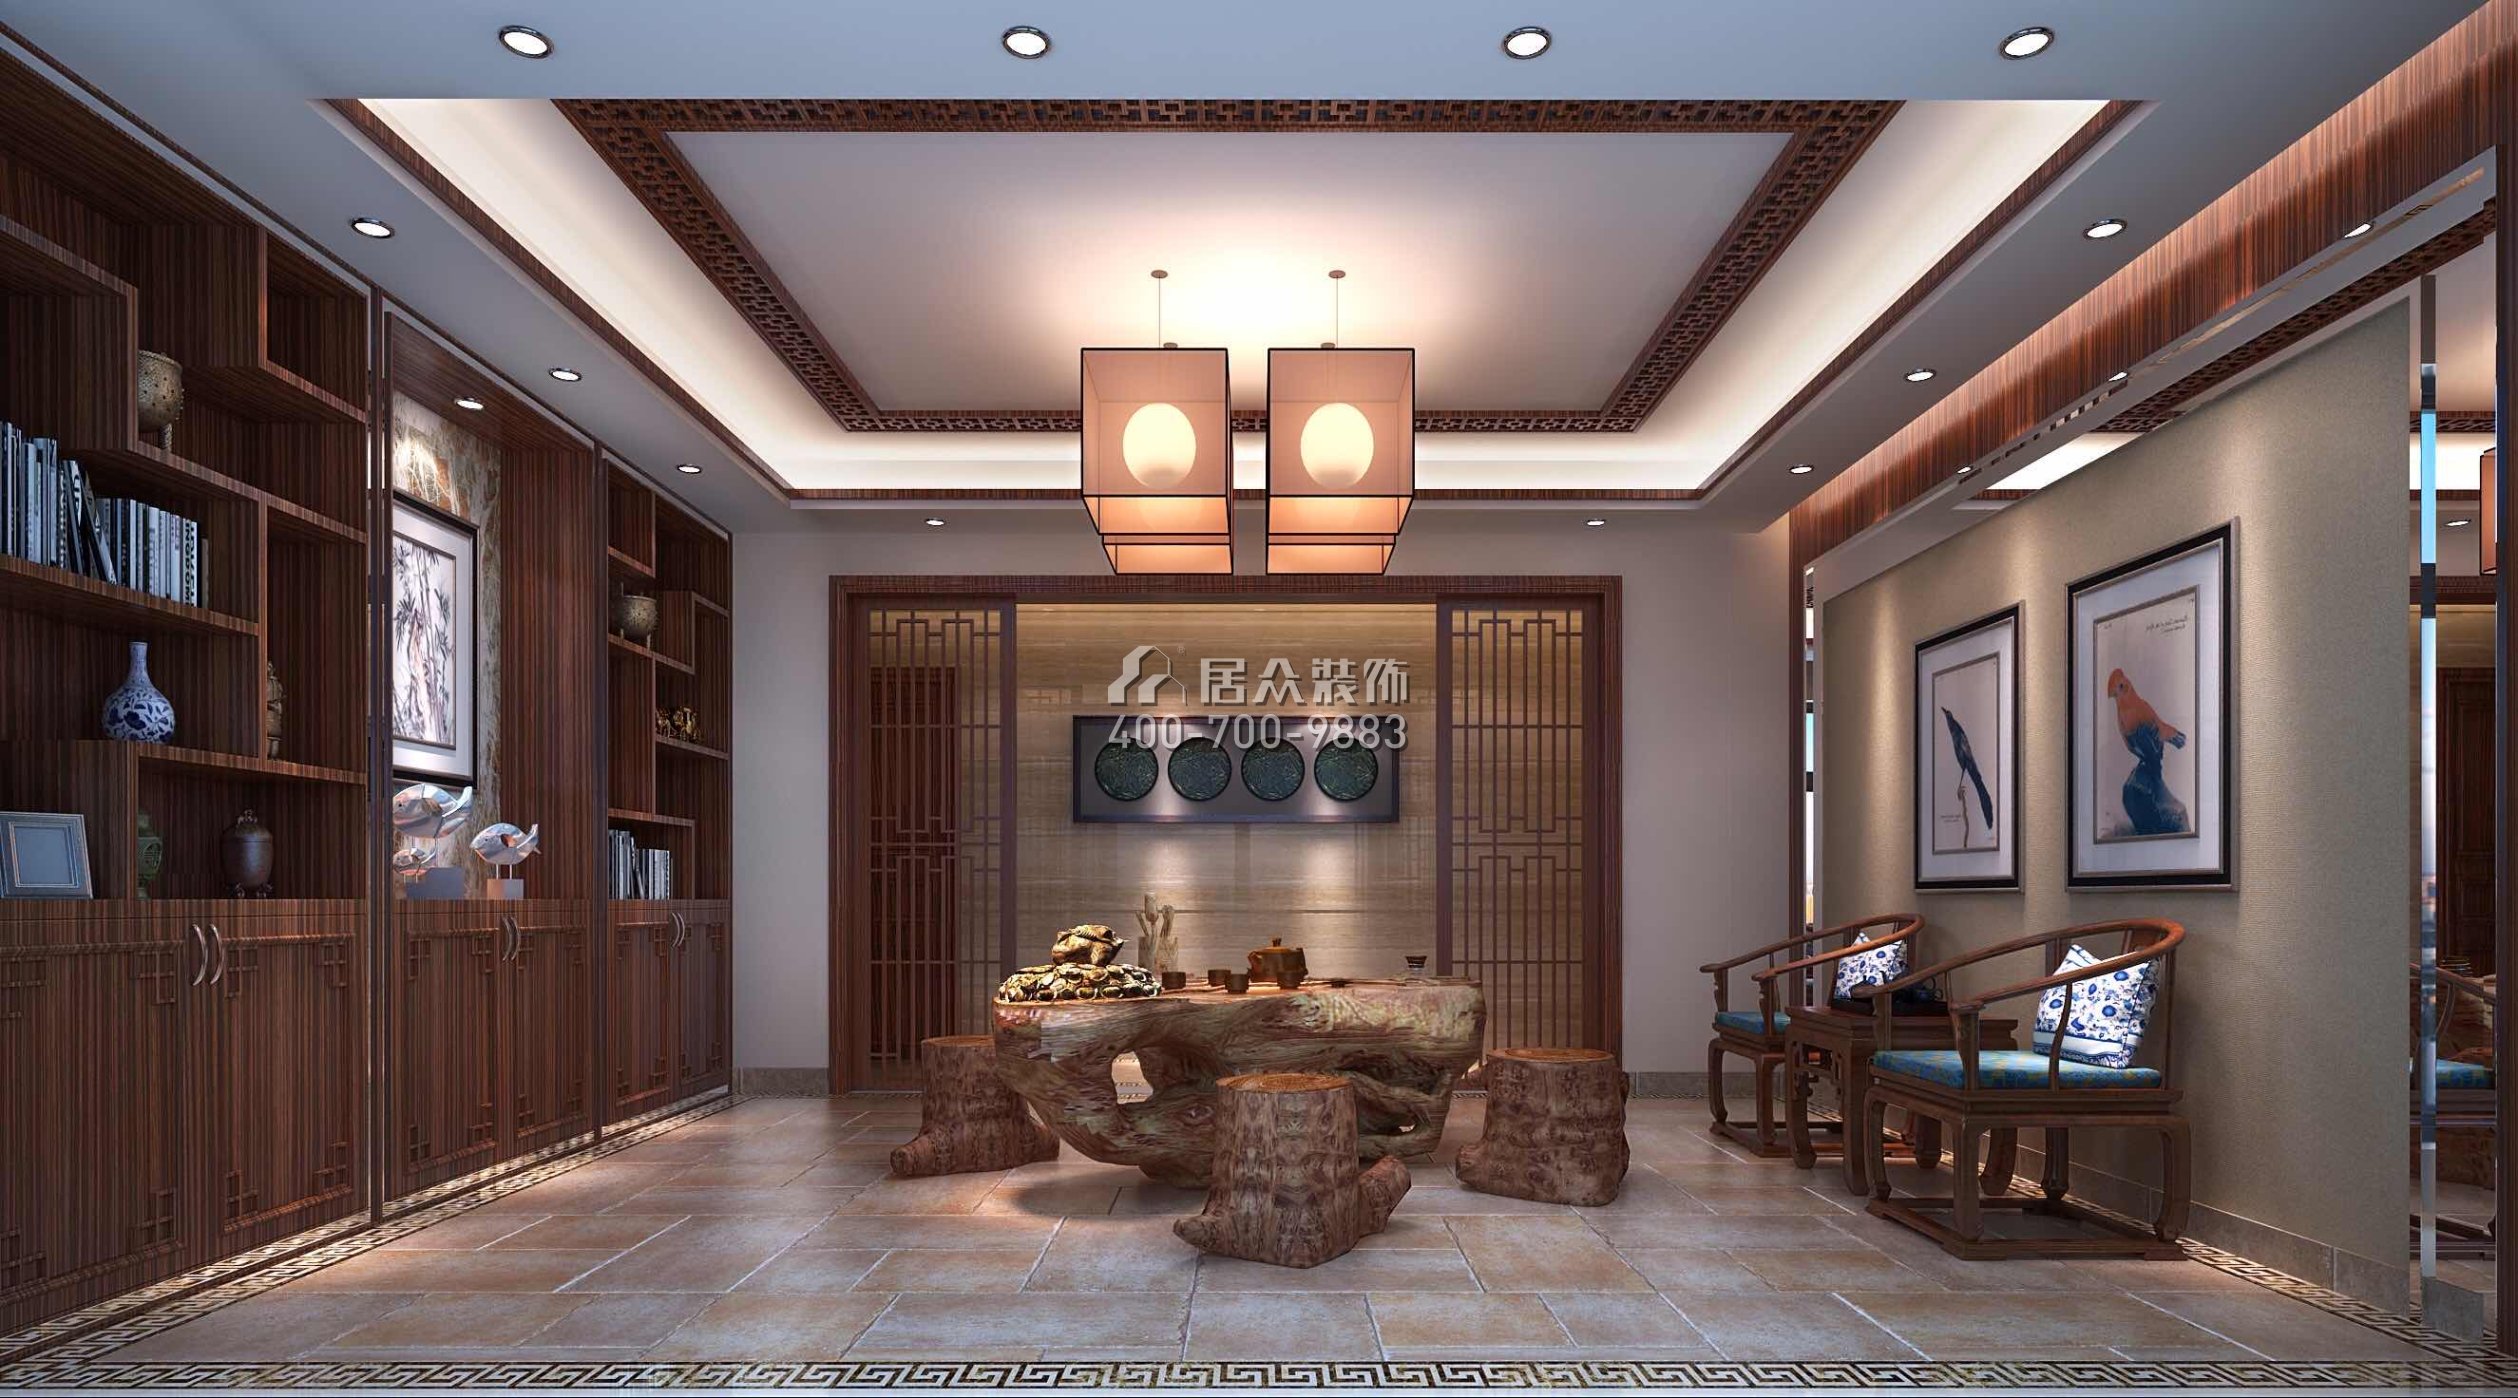 凯因新城天誉250平方米中式风格复式户型茶室装修效果图